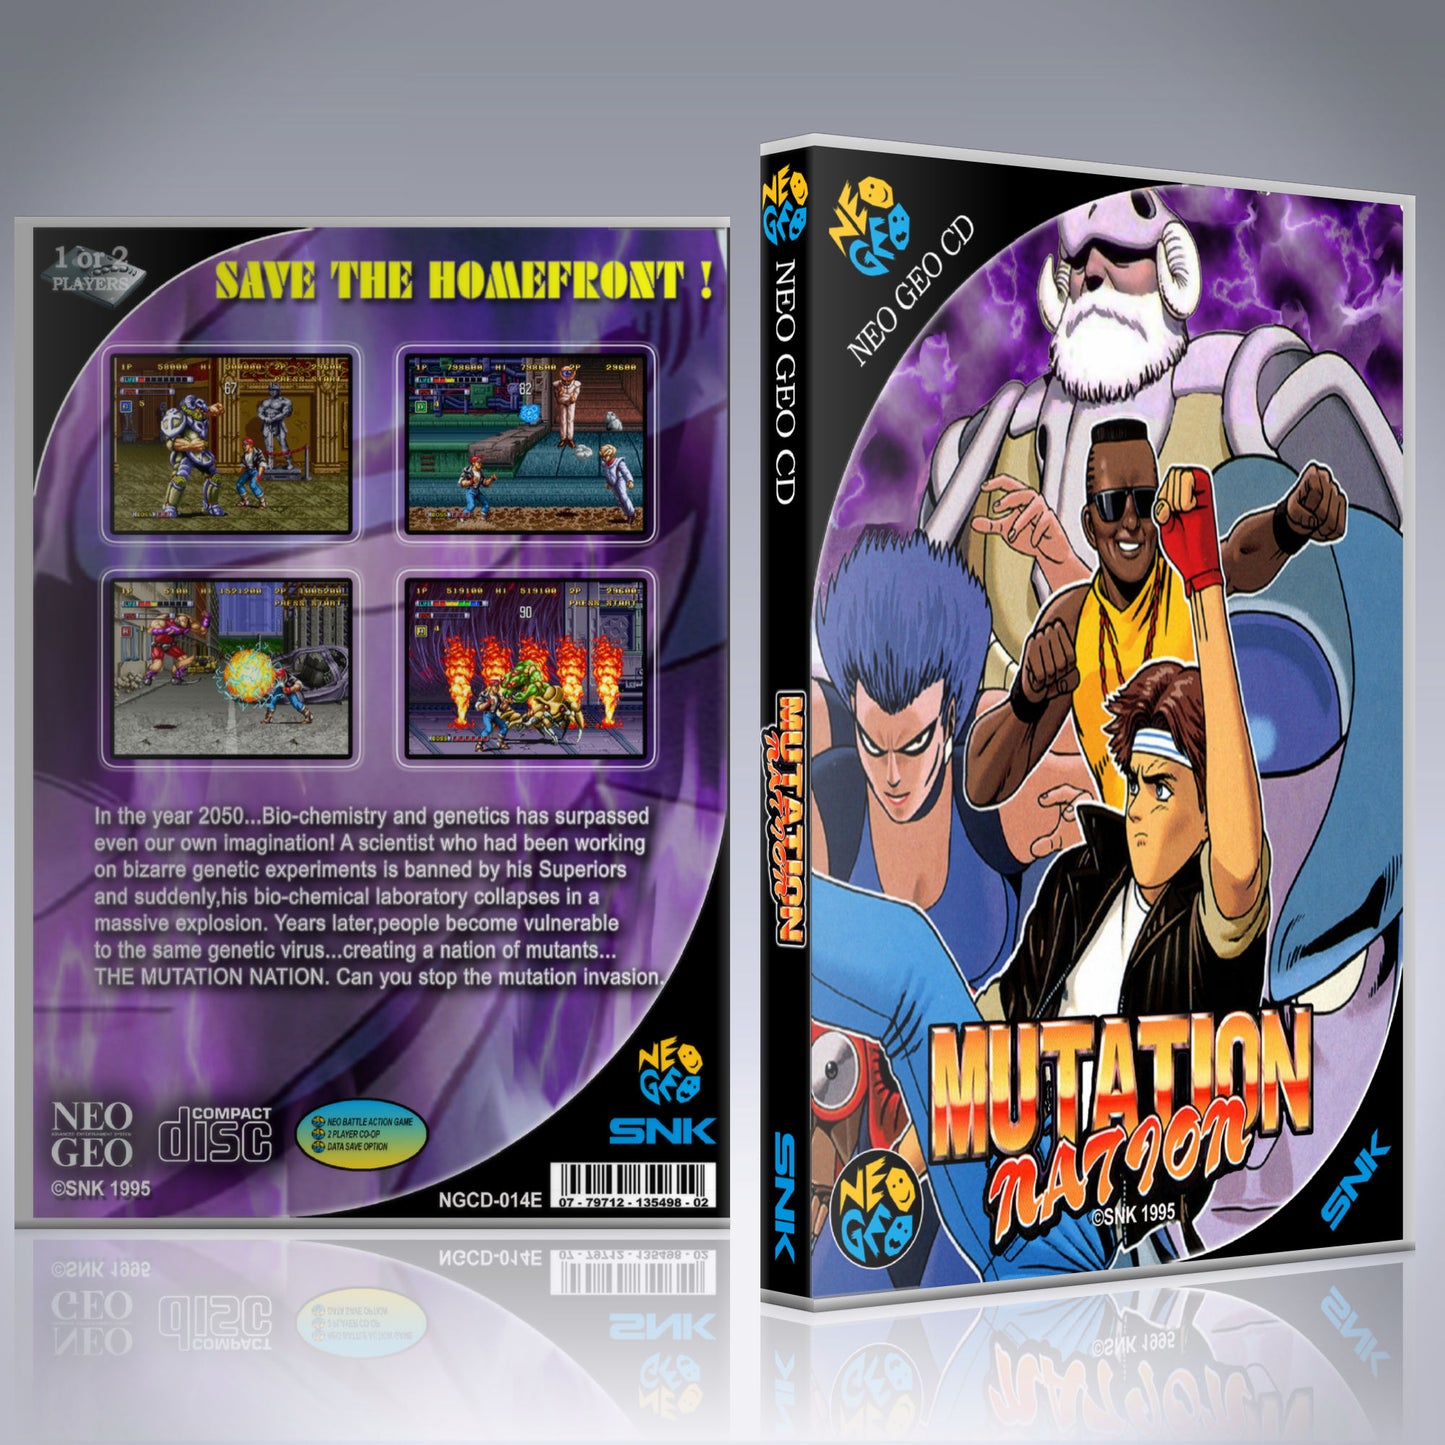 NeoGeo CD Custom Case - NO GAME - Mutation Nation